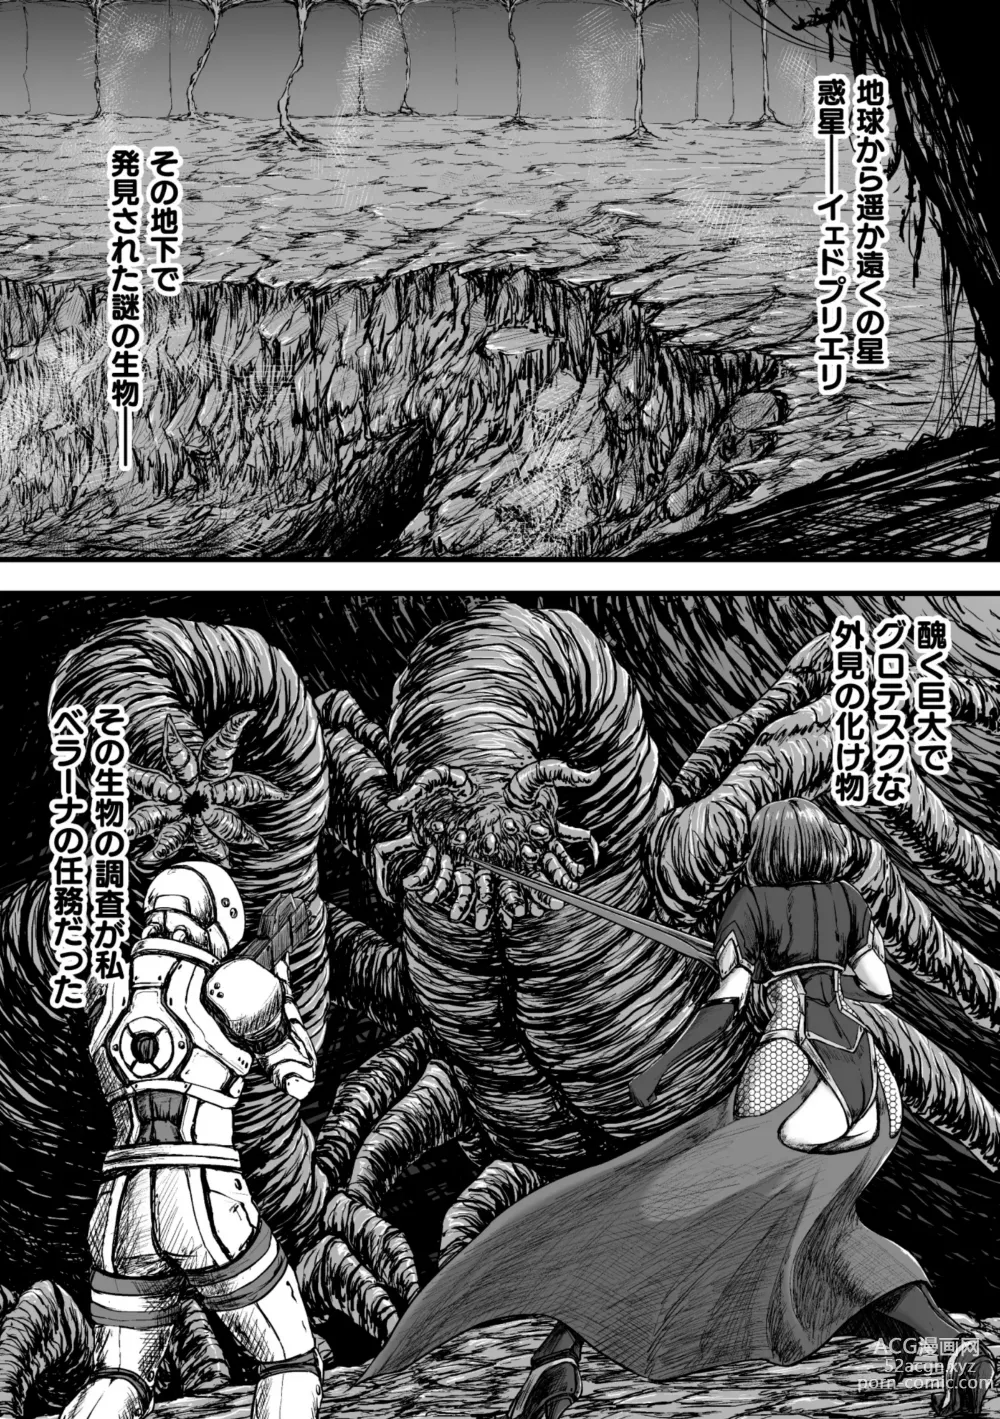 Page 3 of manga Kangoku Tentacle Battleship Episode 3